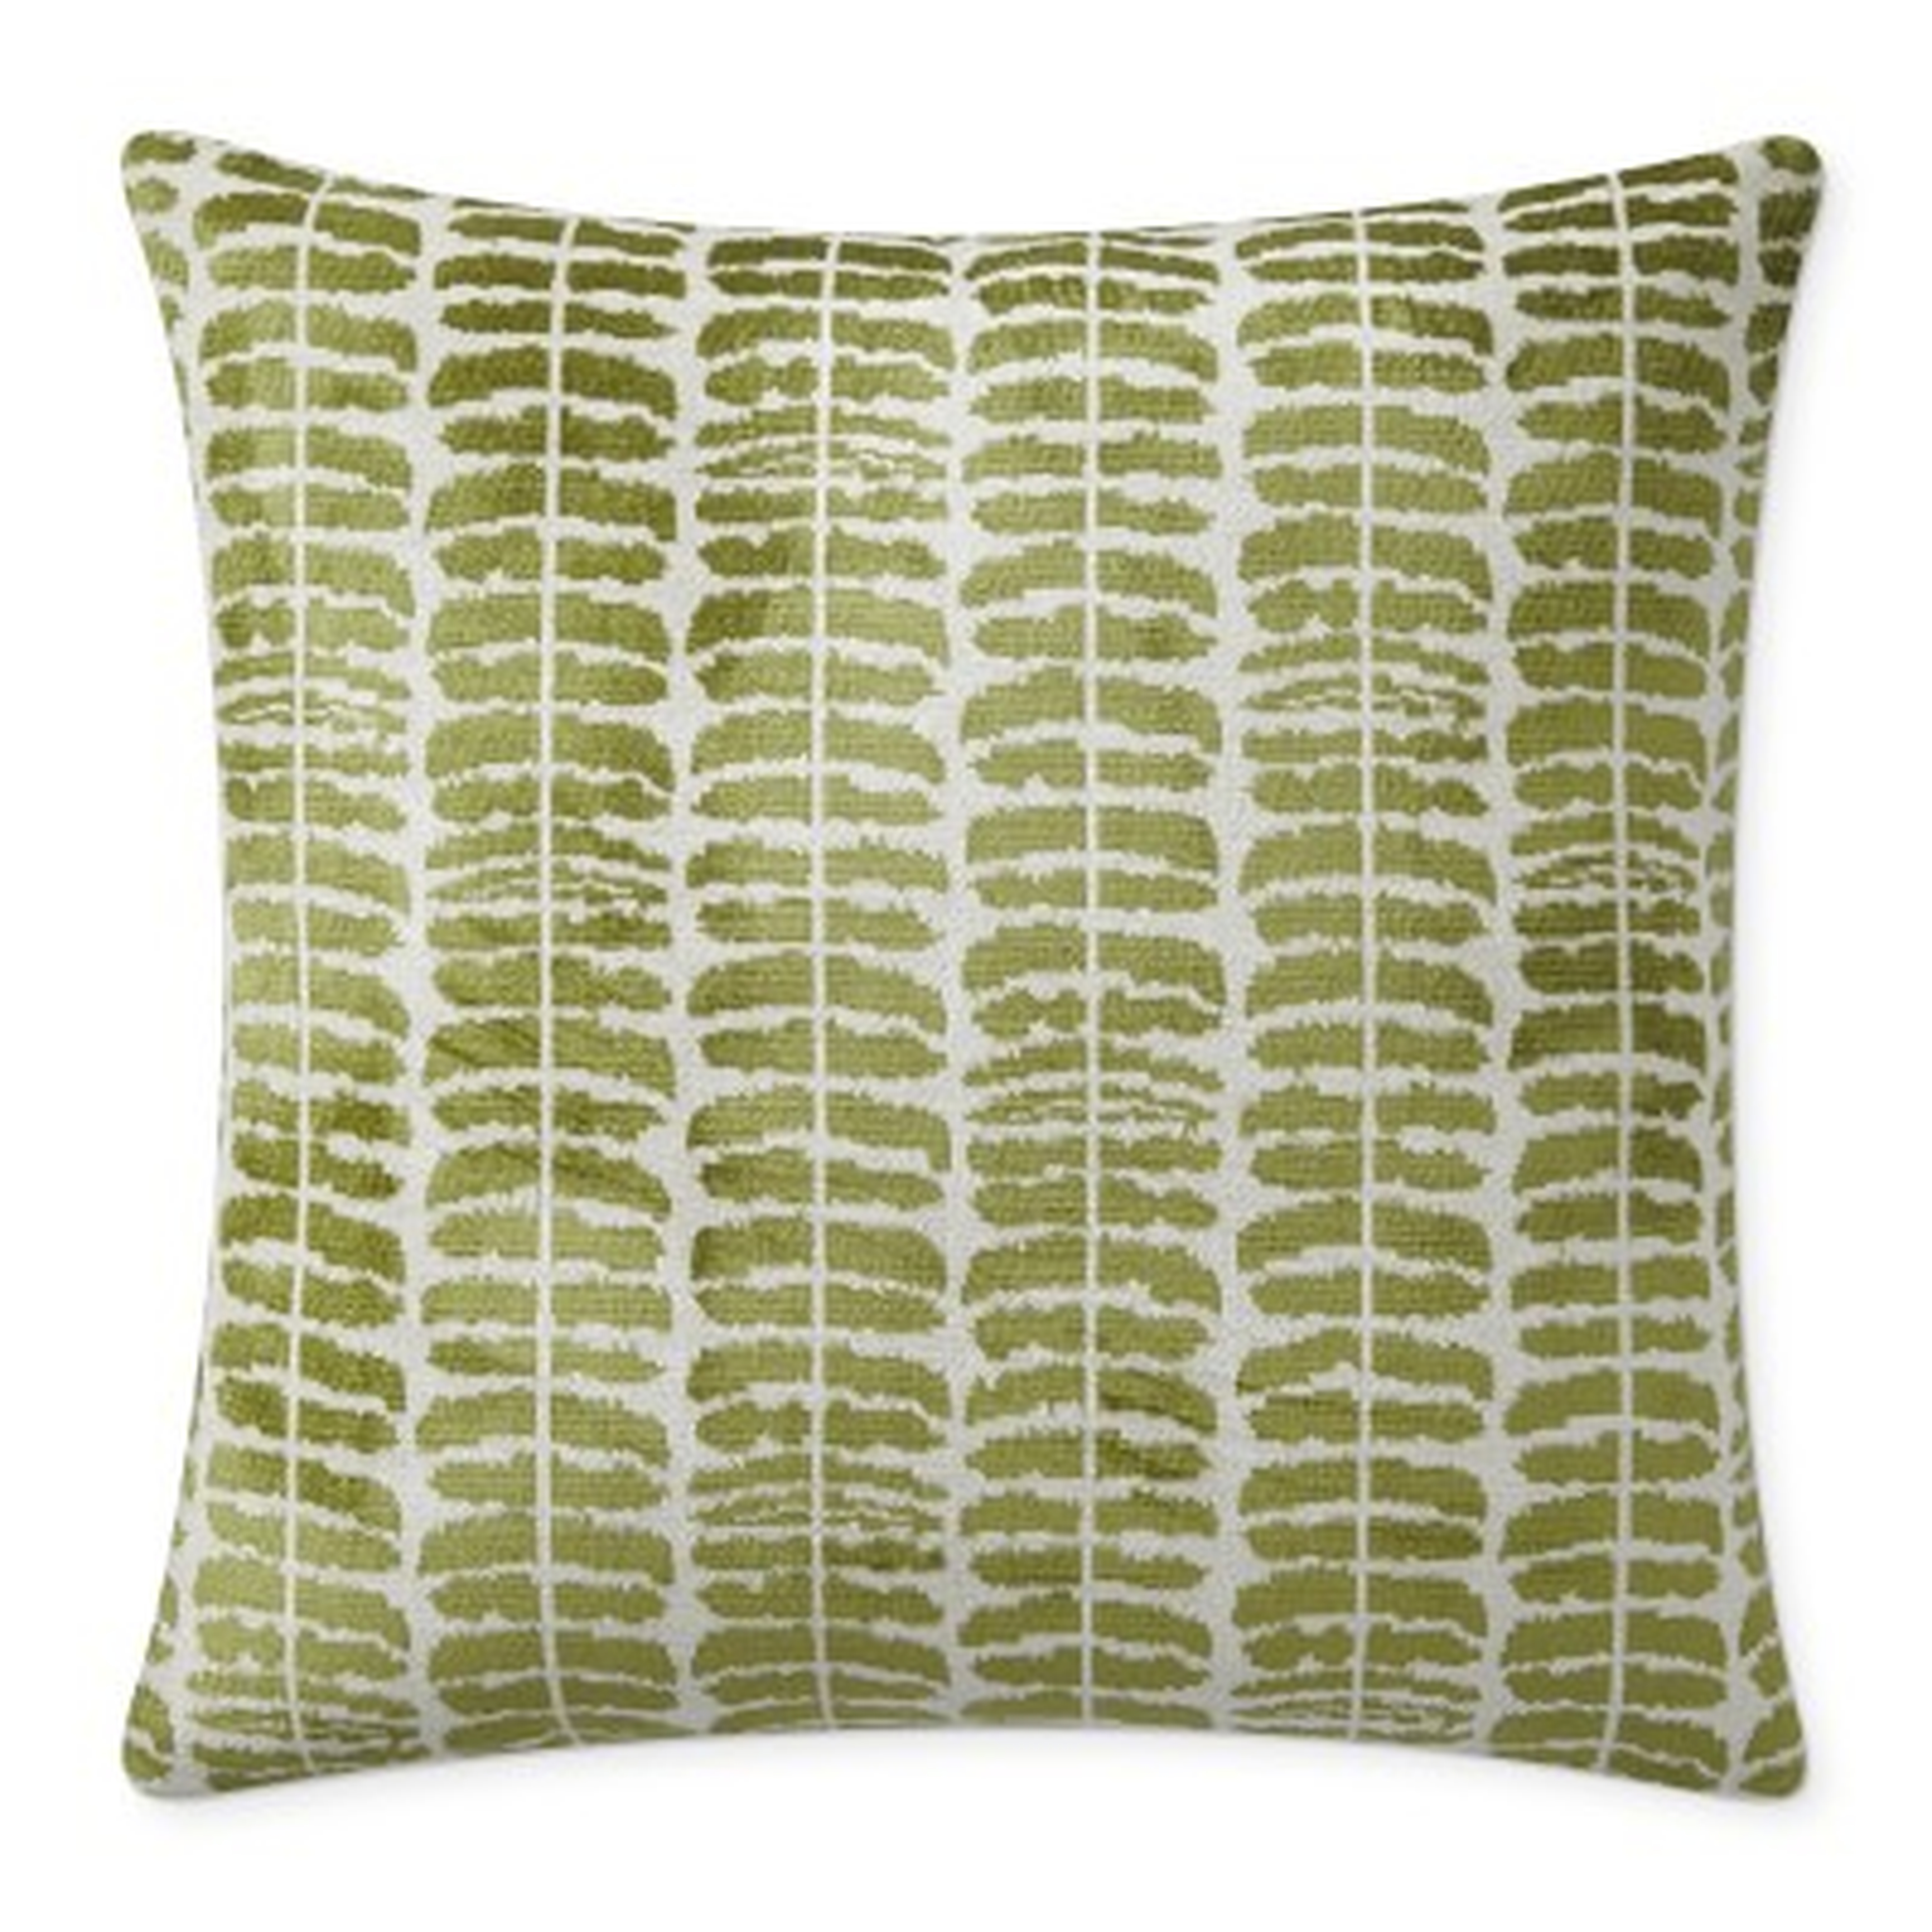 Stripe Velvet Jacquard Pillow Cover, 22" X 22", Green - Williams Sonoma